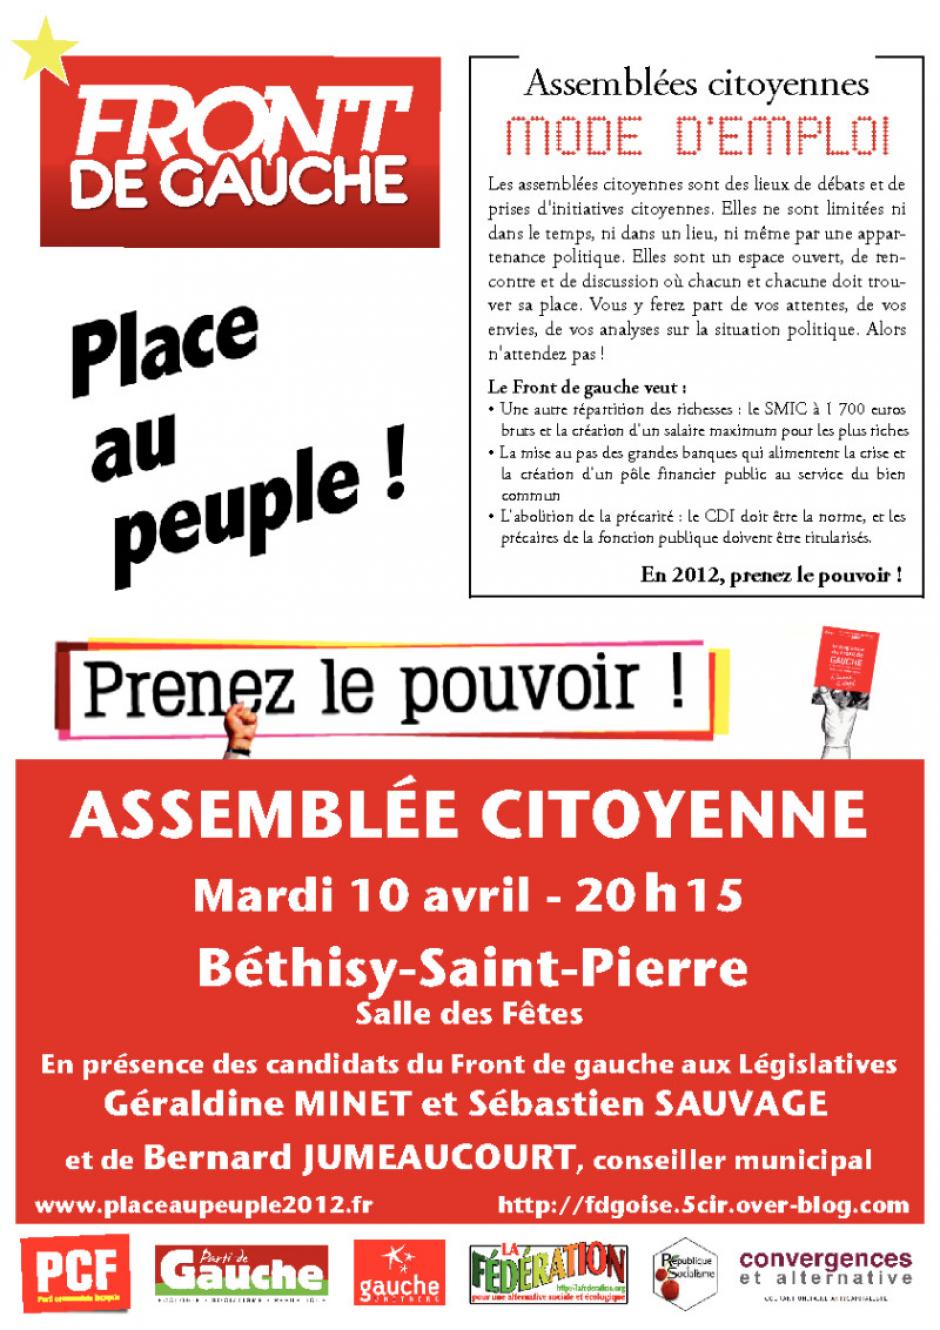 10 avril, Béthisy-Saint-Pierre - Assemblée citoyenne du Front de gauche